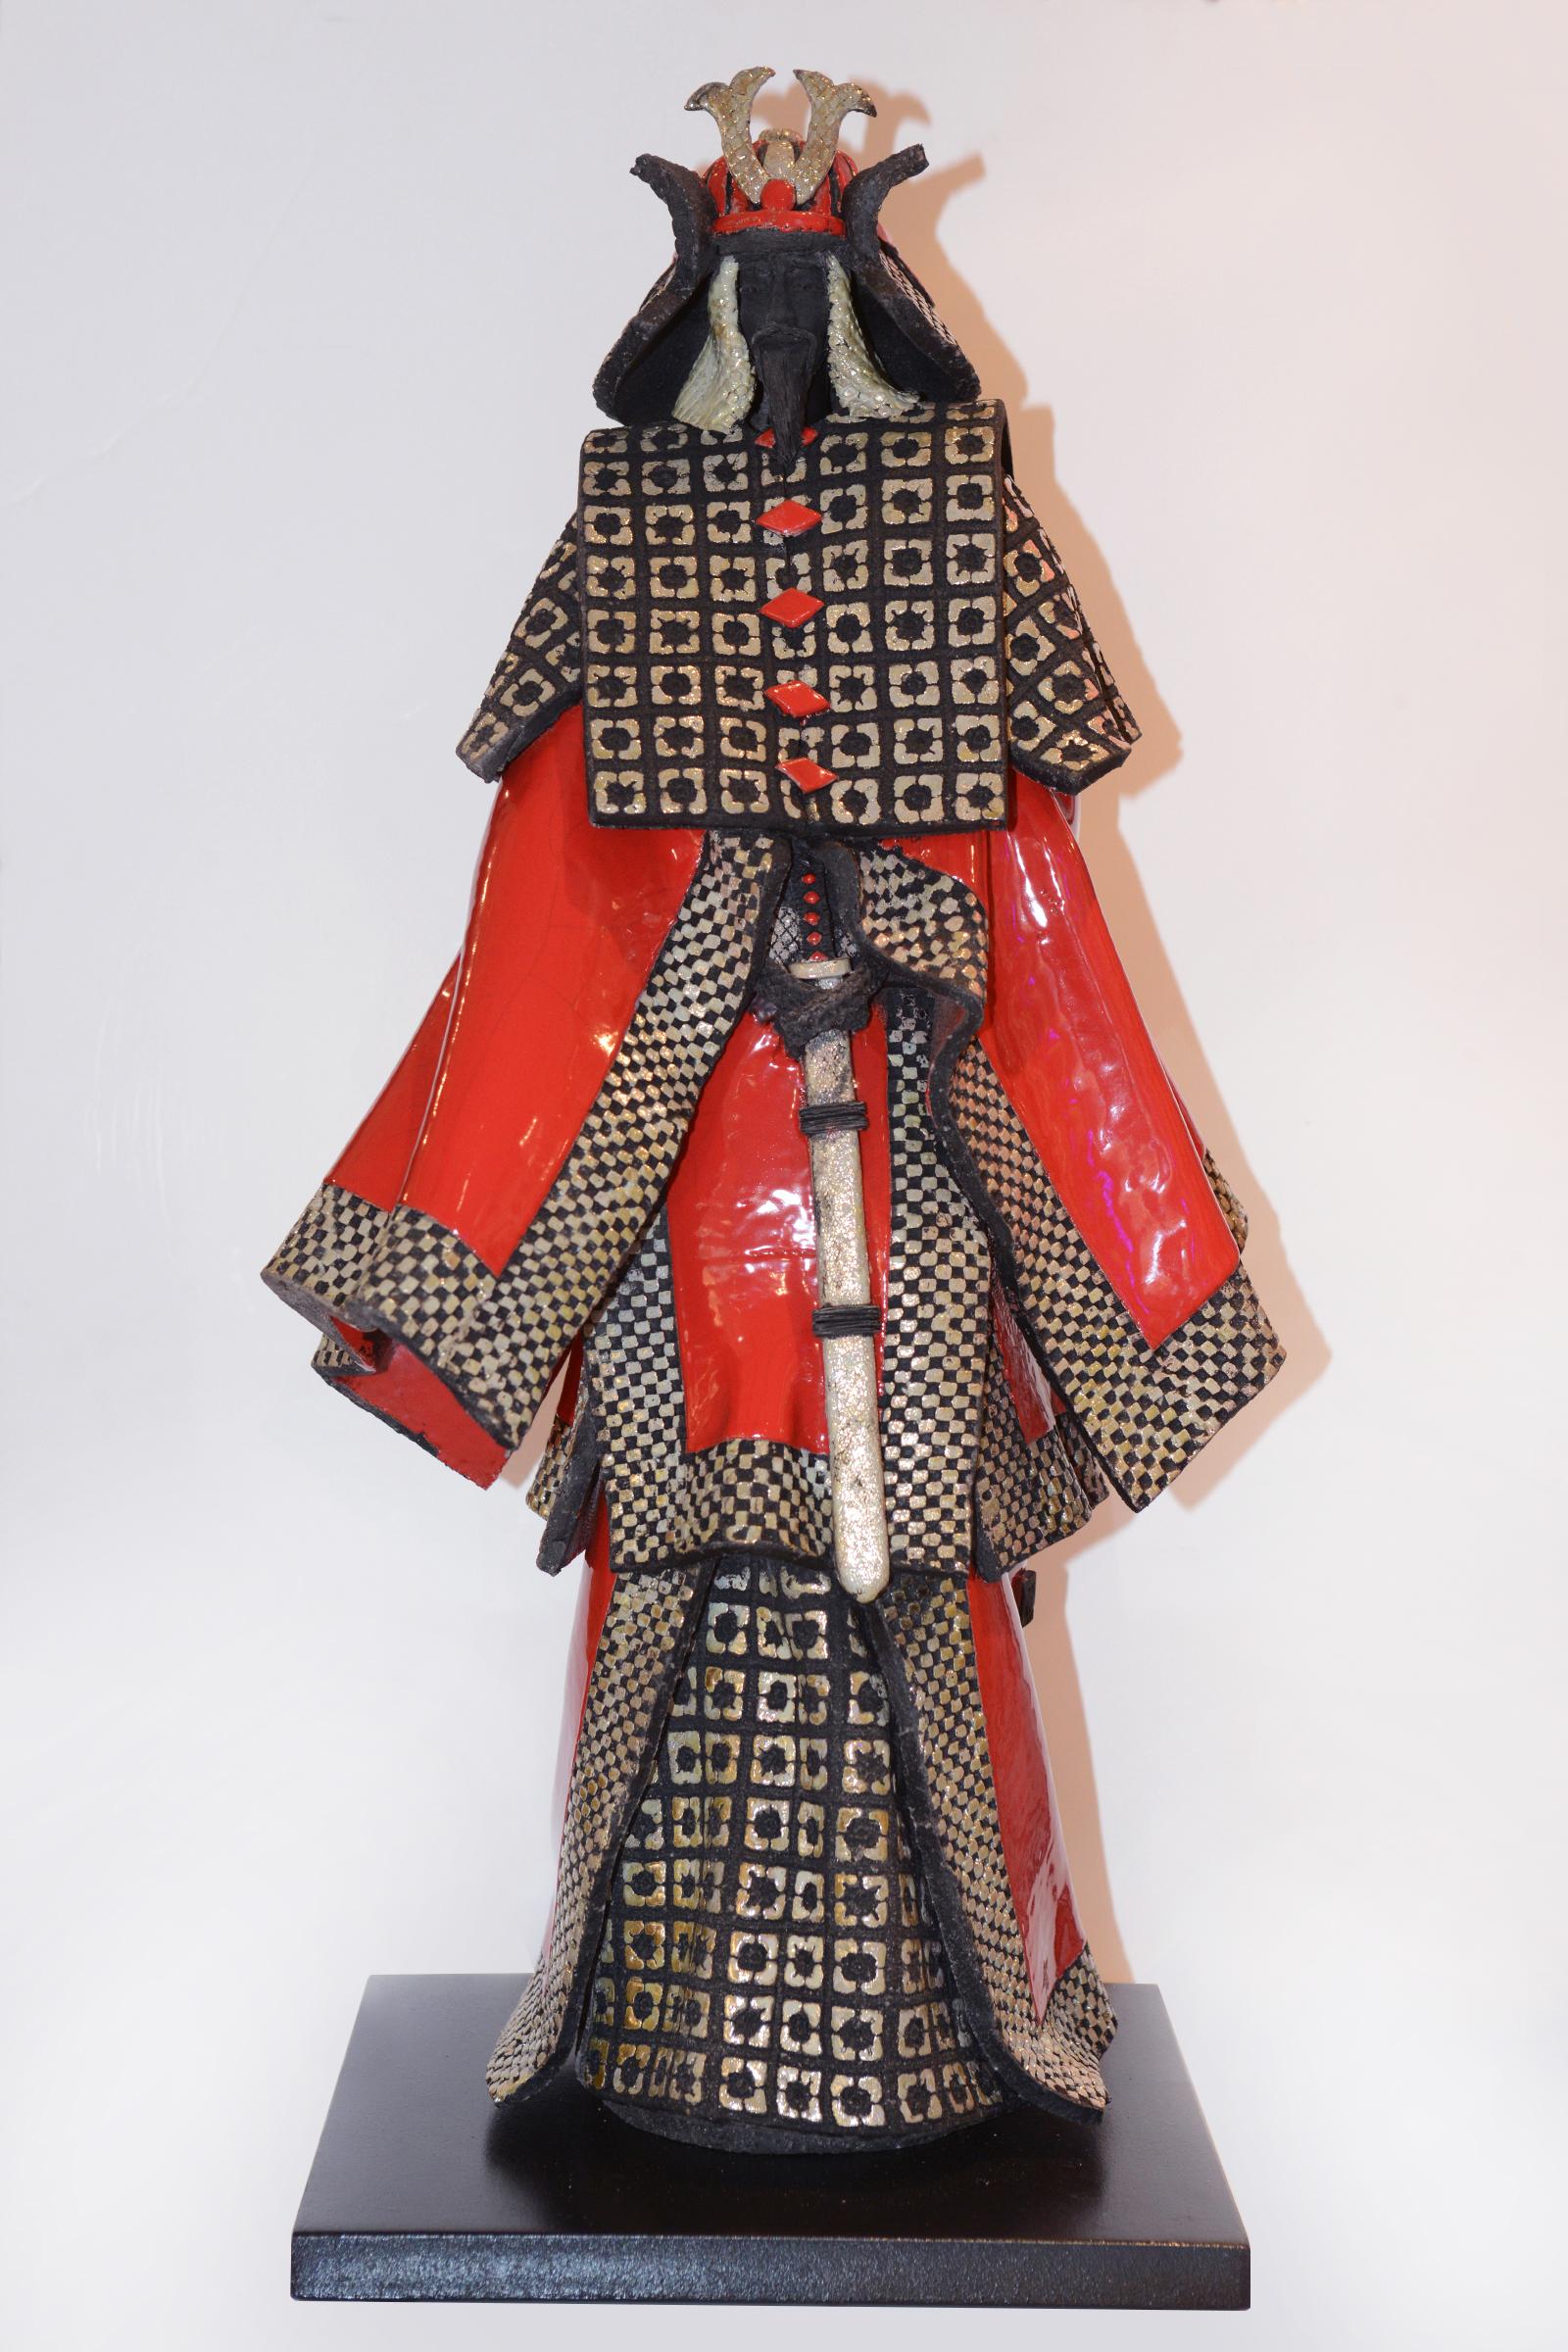 Skulptur Samurai Raku rot und Silber hergestellt in
Raku-Keramik, die metallisch versilbert glänzt. 
Raku-Keramik Samurai zeichnen sich durch ihre 
rohes Aussehen. Die Rauchtechnik offenbart 
sehr kleine Risse im Zahnschmelz und fördert 
das